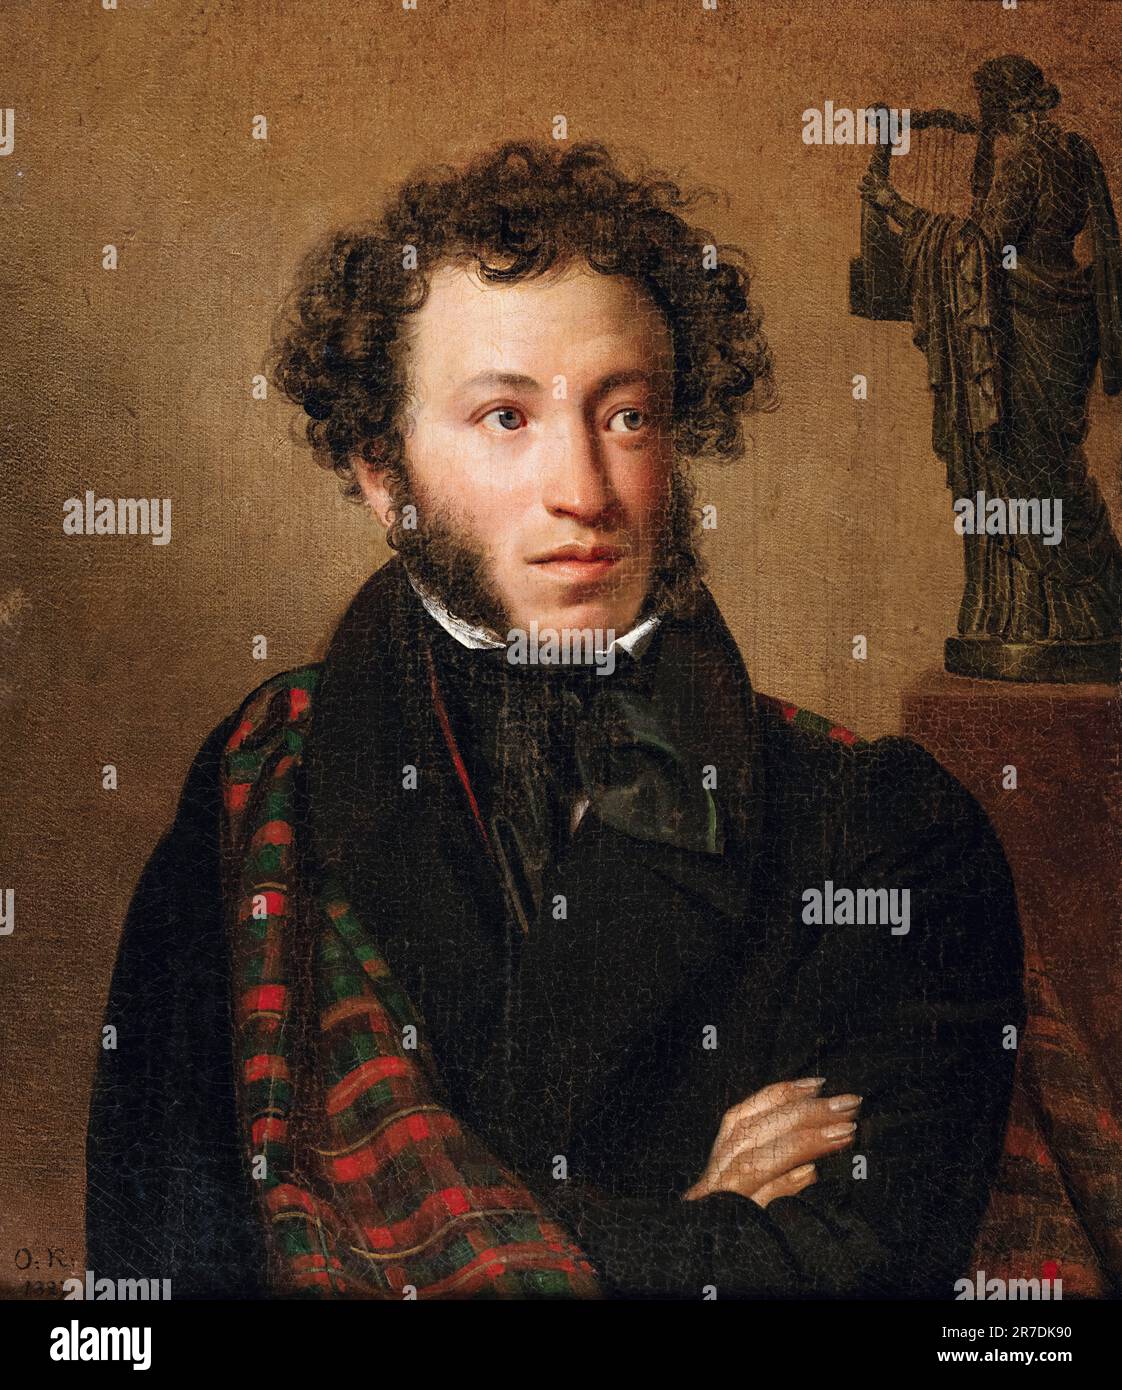 Alexander Puschkin (1799-1837), russischer Dichter, Dramatiker und Schriftsteller, Porträt in Öl auf Leinwand von Orest Kiprensky, 1827 Stockfoto